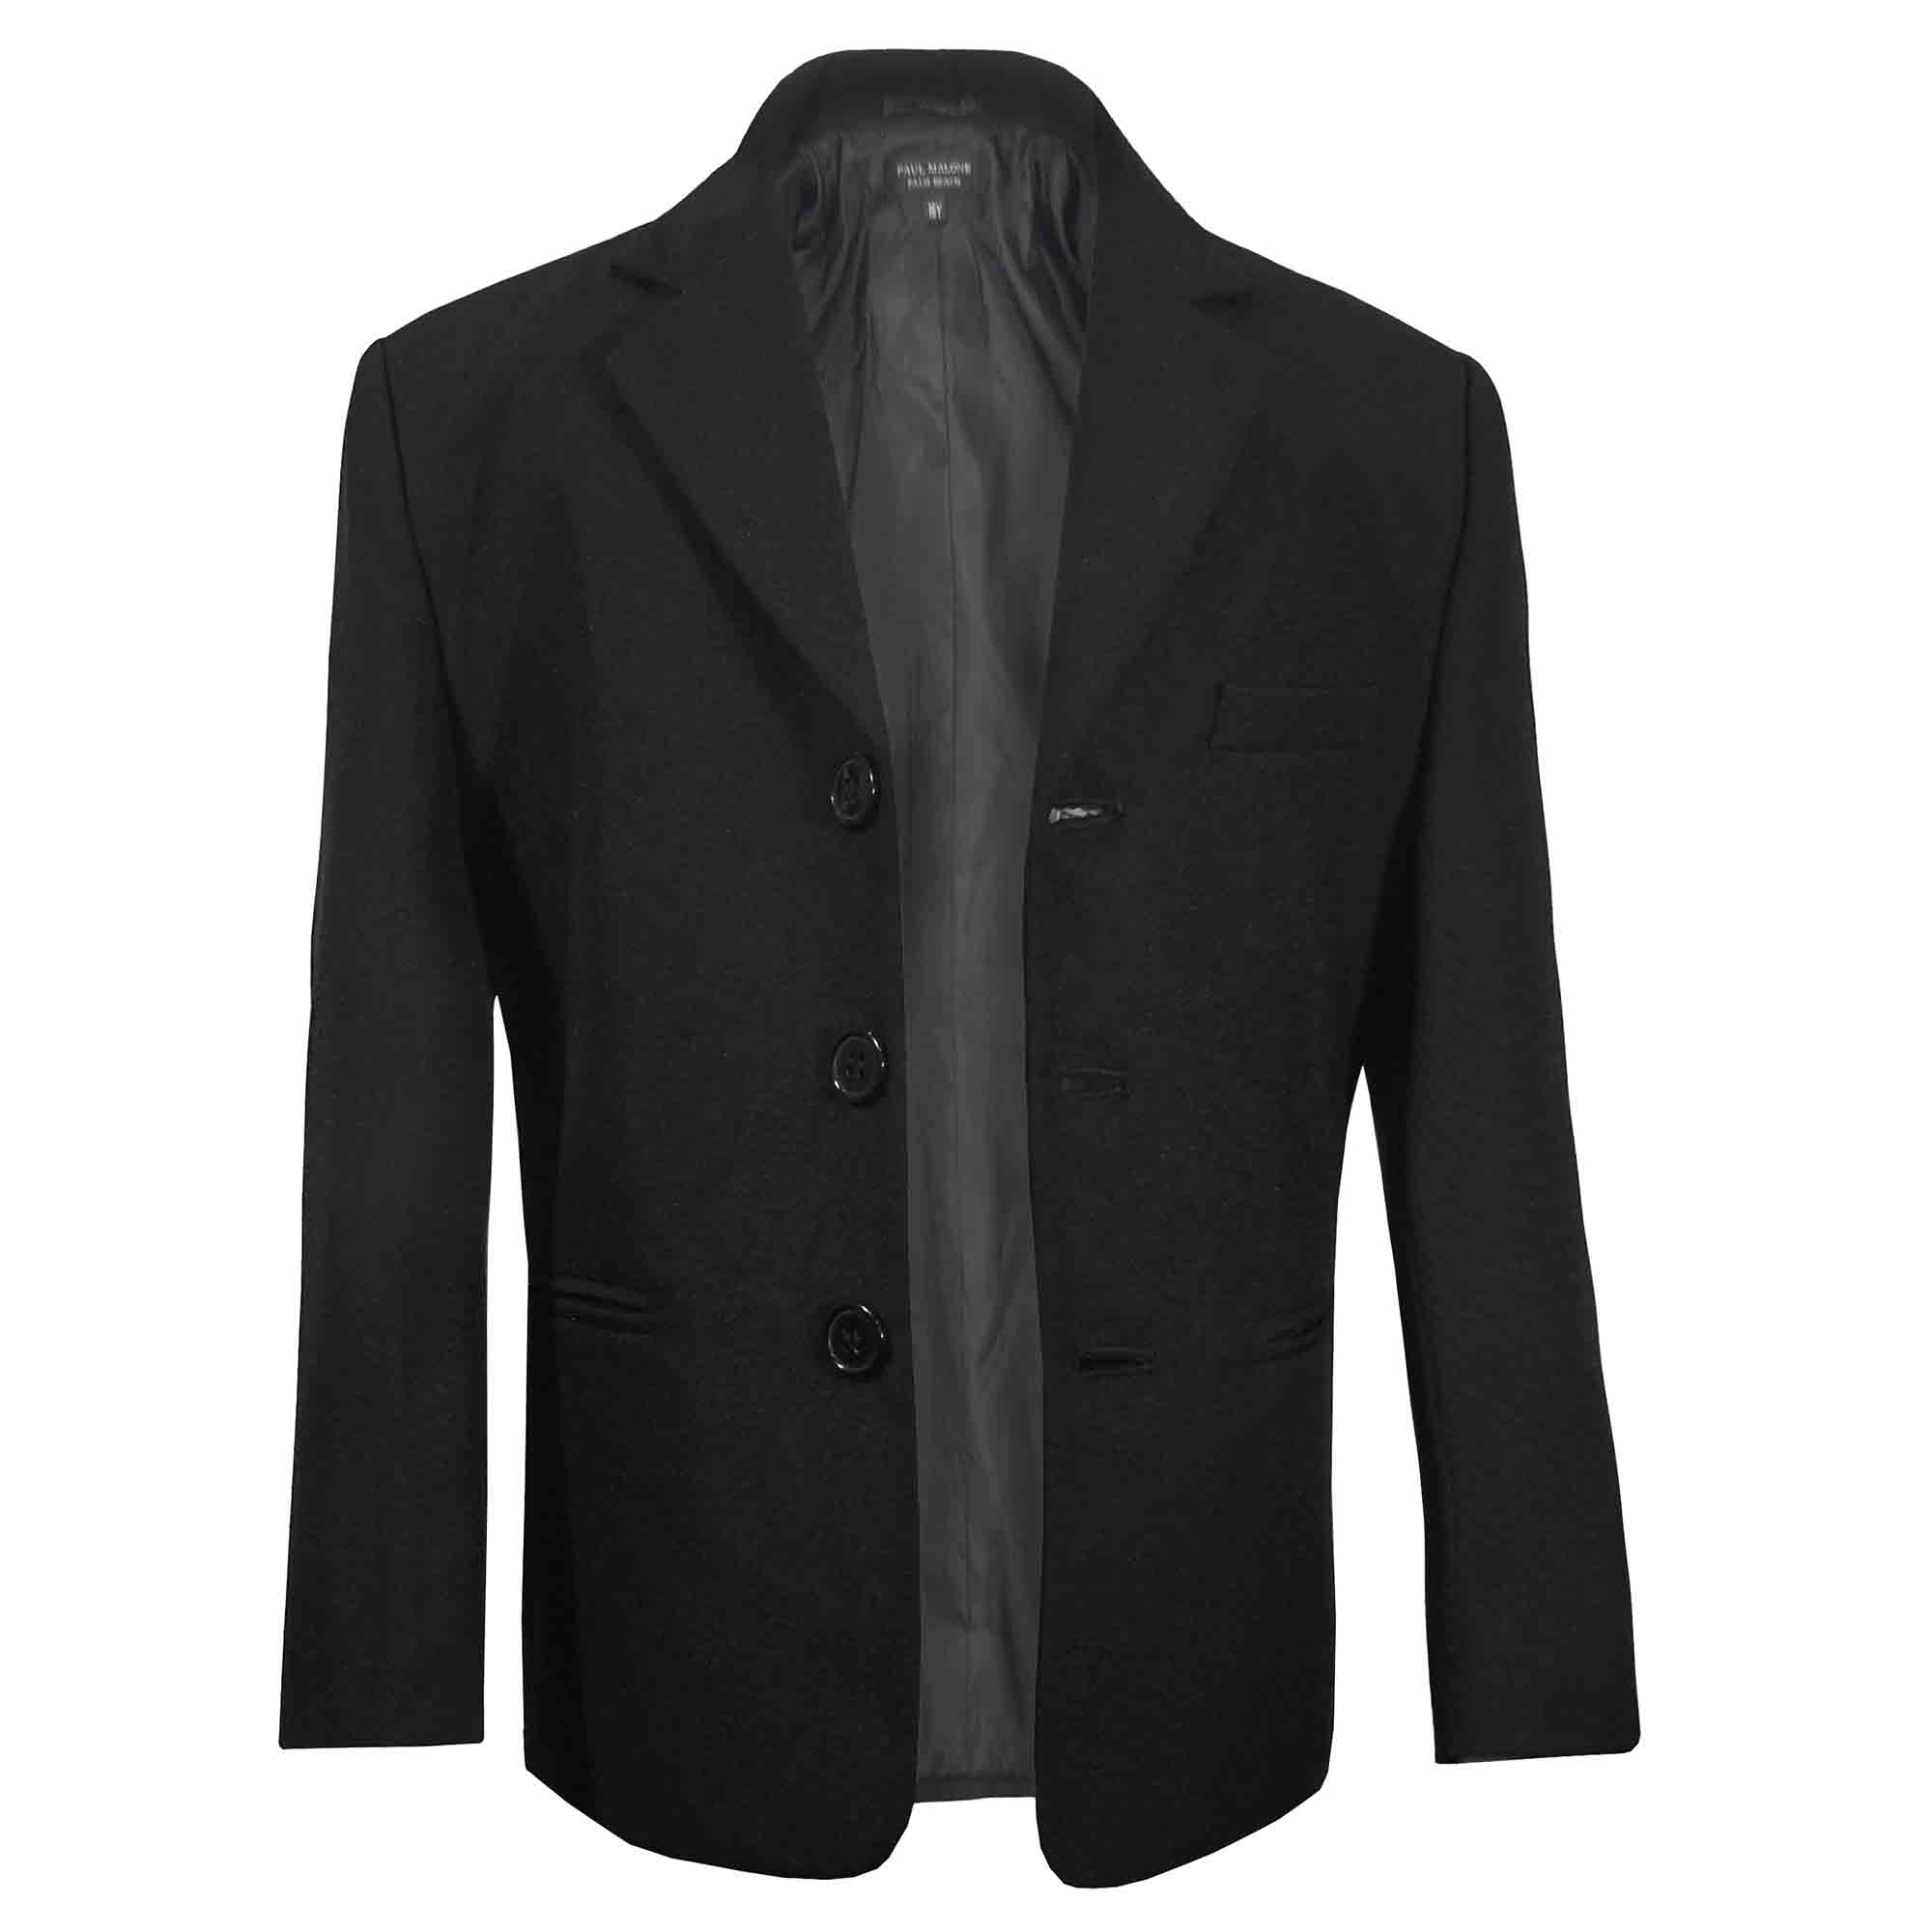 S1 BOY Formal Party Black Tuxedo Suit Red Vest & Tie 1 2 3 4 5 6 7 8 10 12 14 